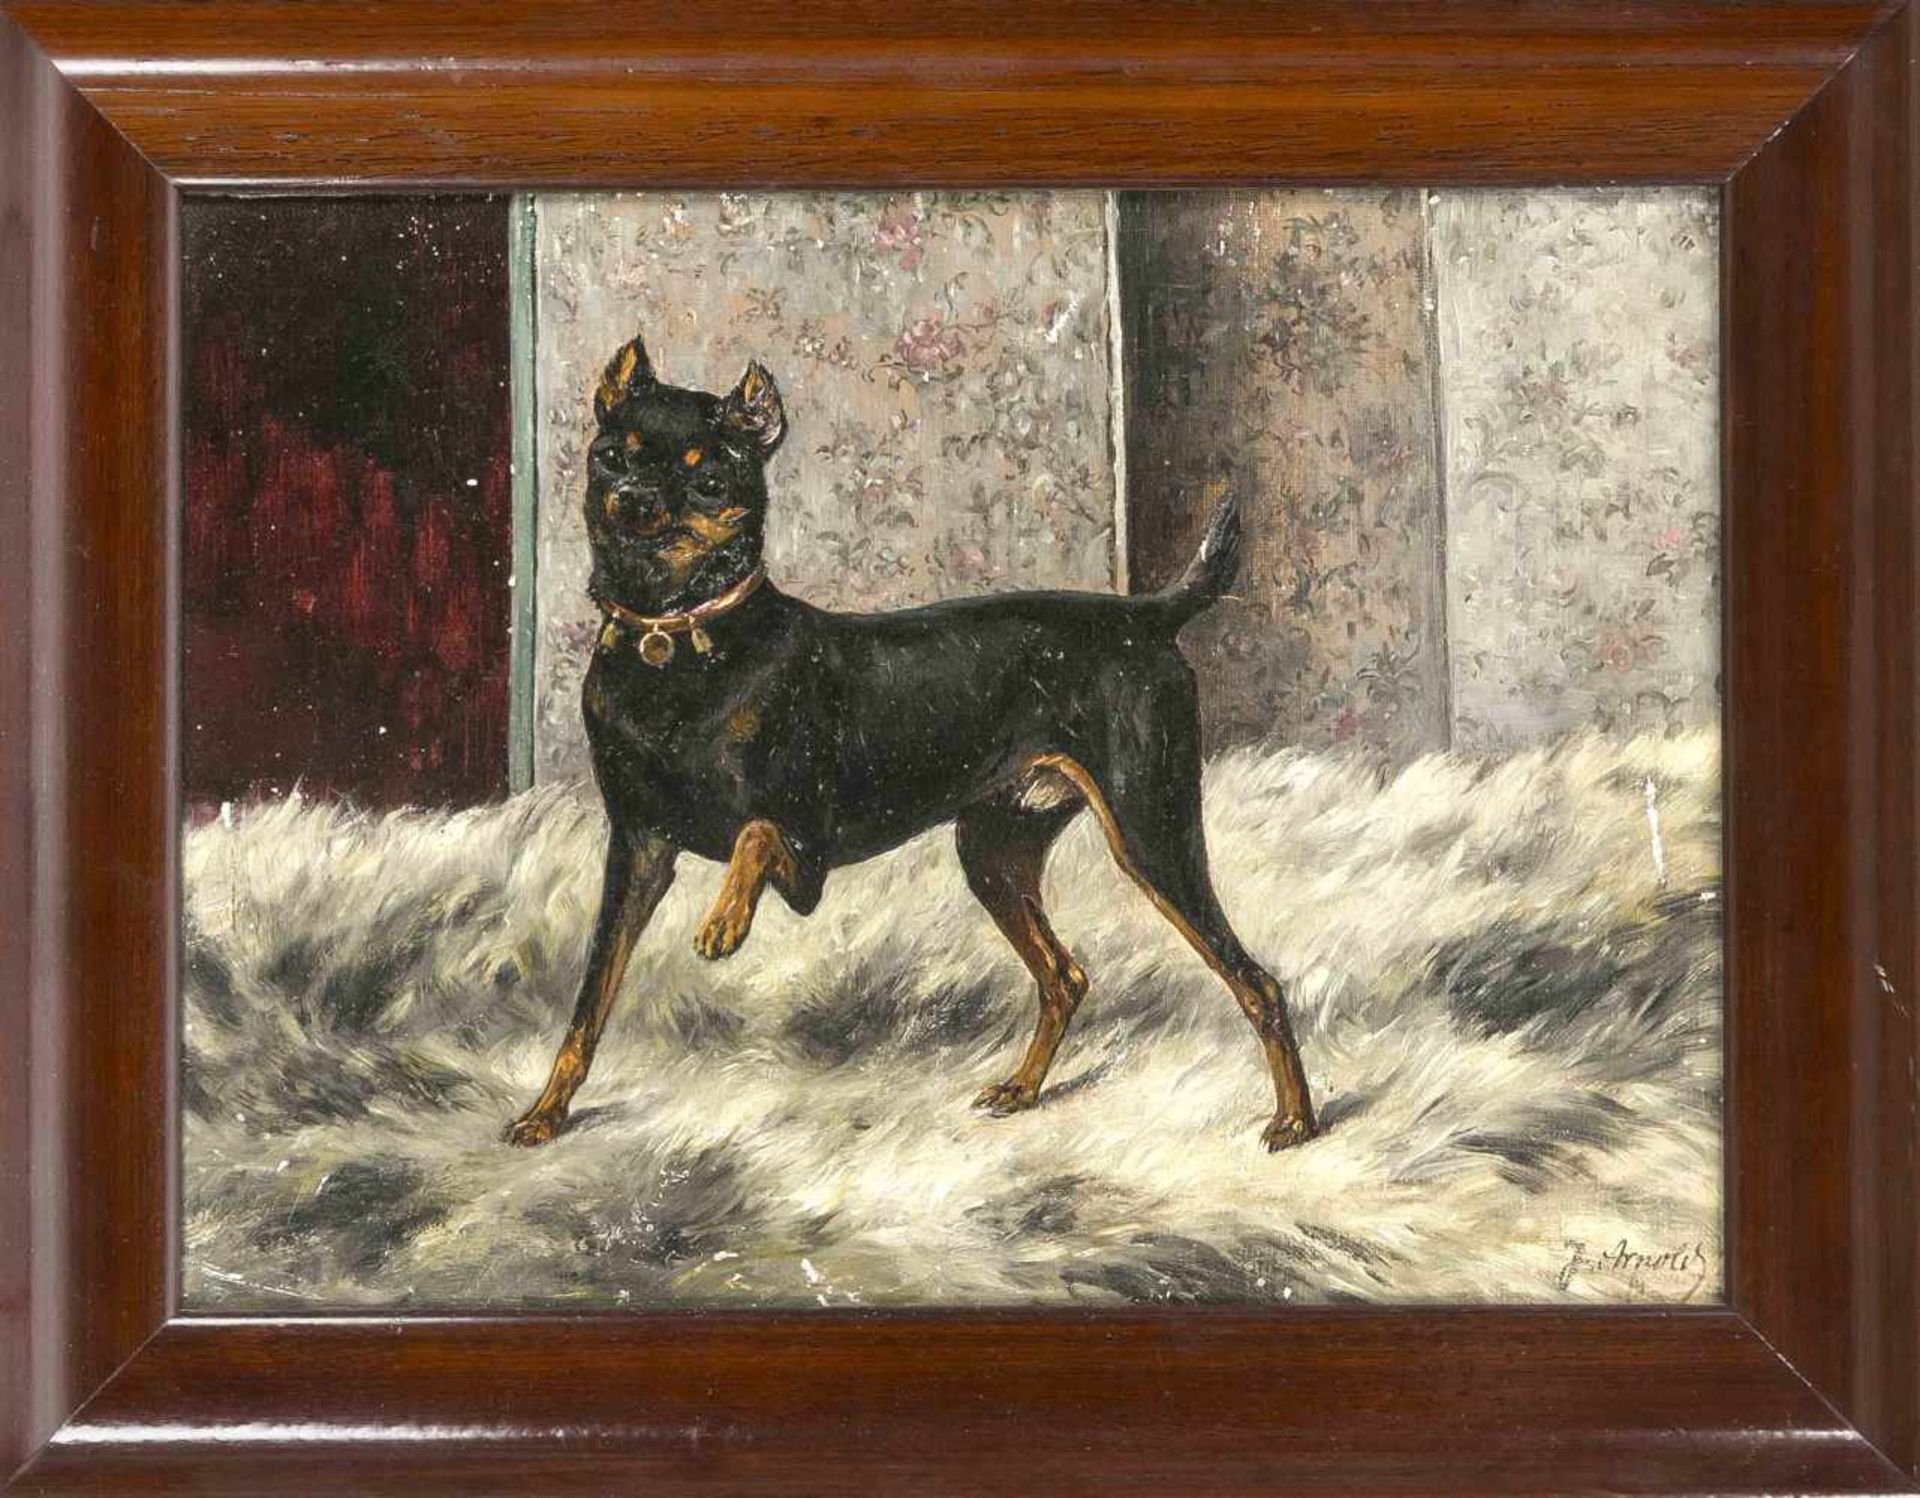 J. Arnold, Tiermaler des 19. Jh., Bildnis eines Pinschers auf einem Fell stehend, Öl aufLwd., u. re.